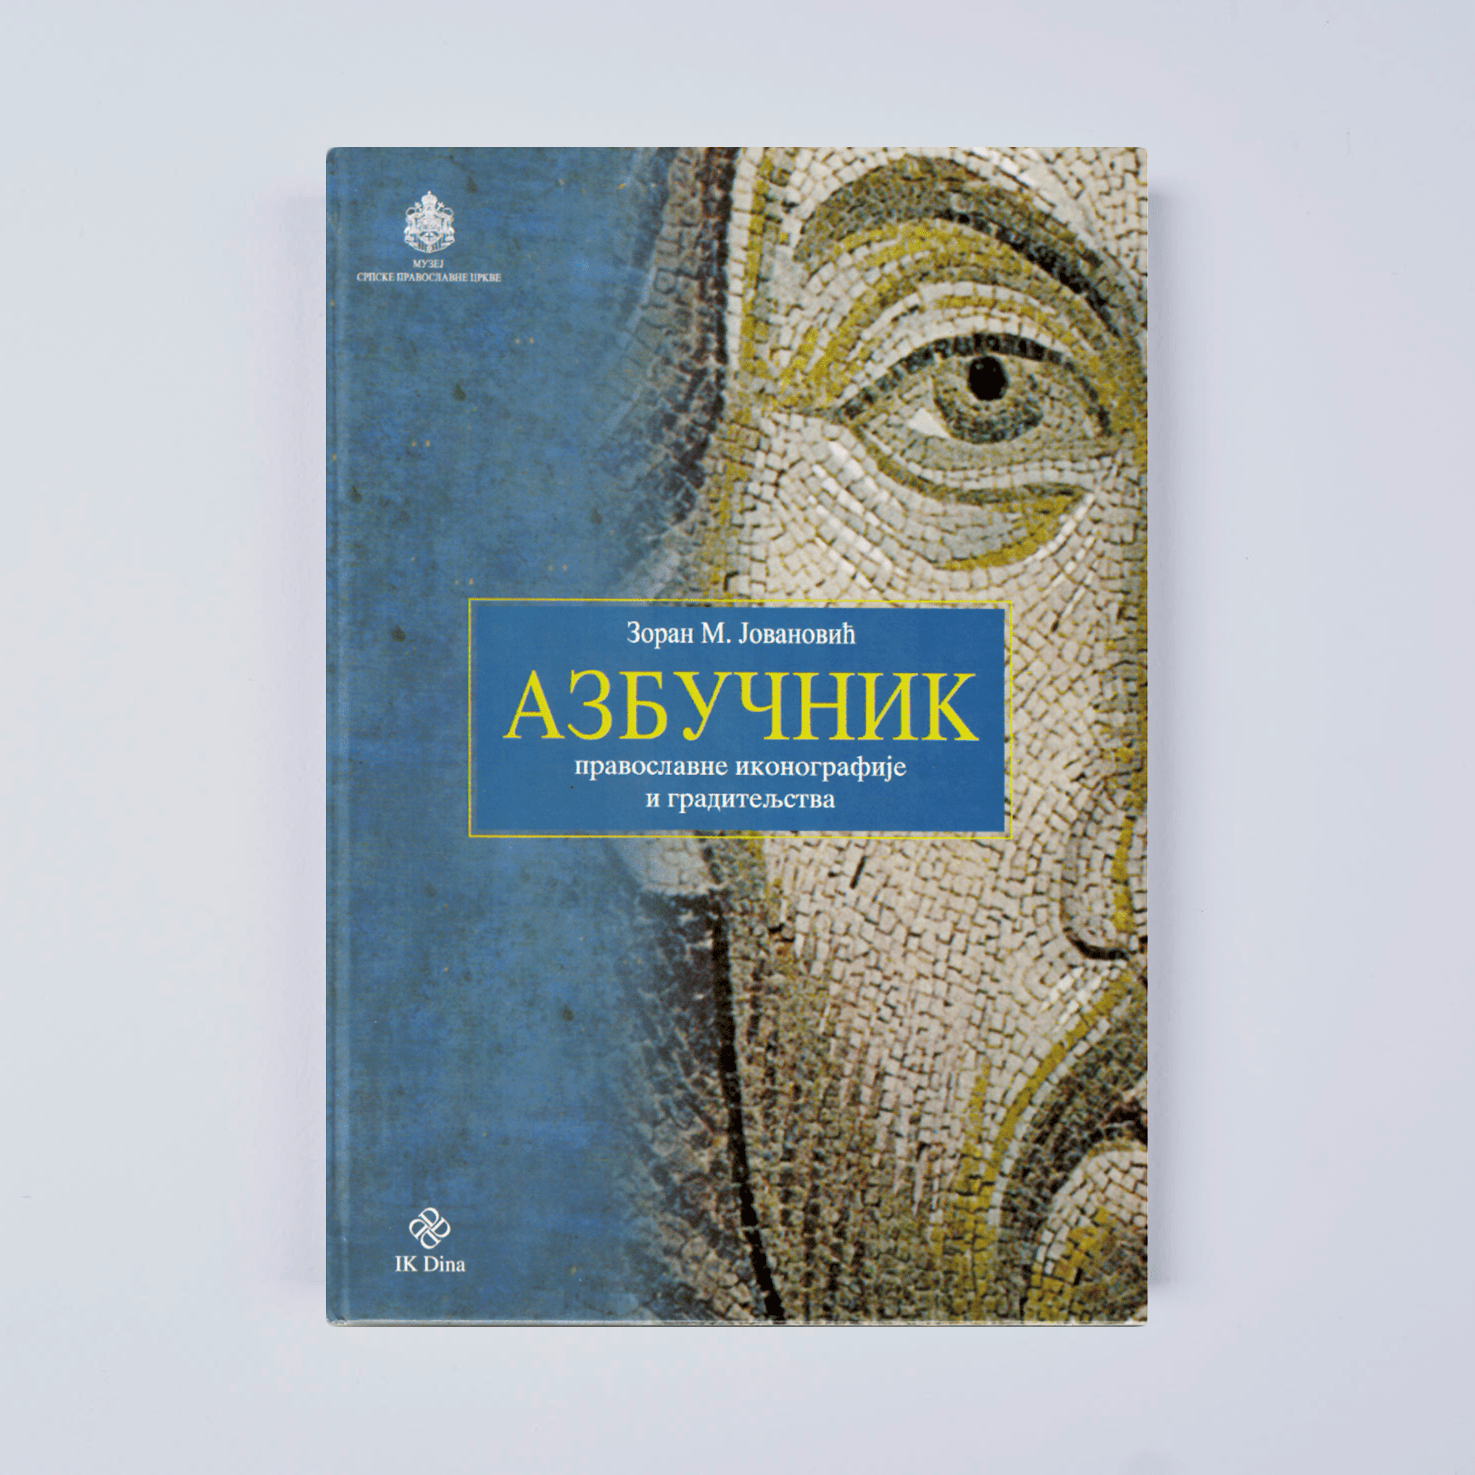 Азбучник православне иконографије и градитељства